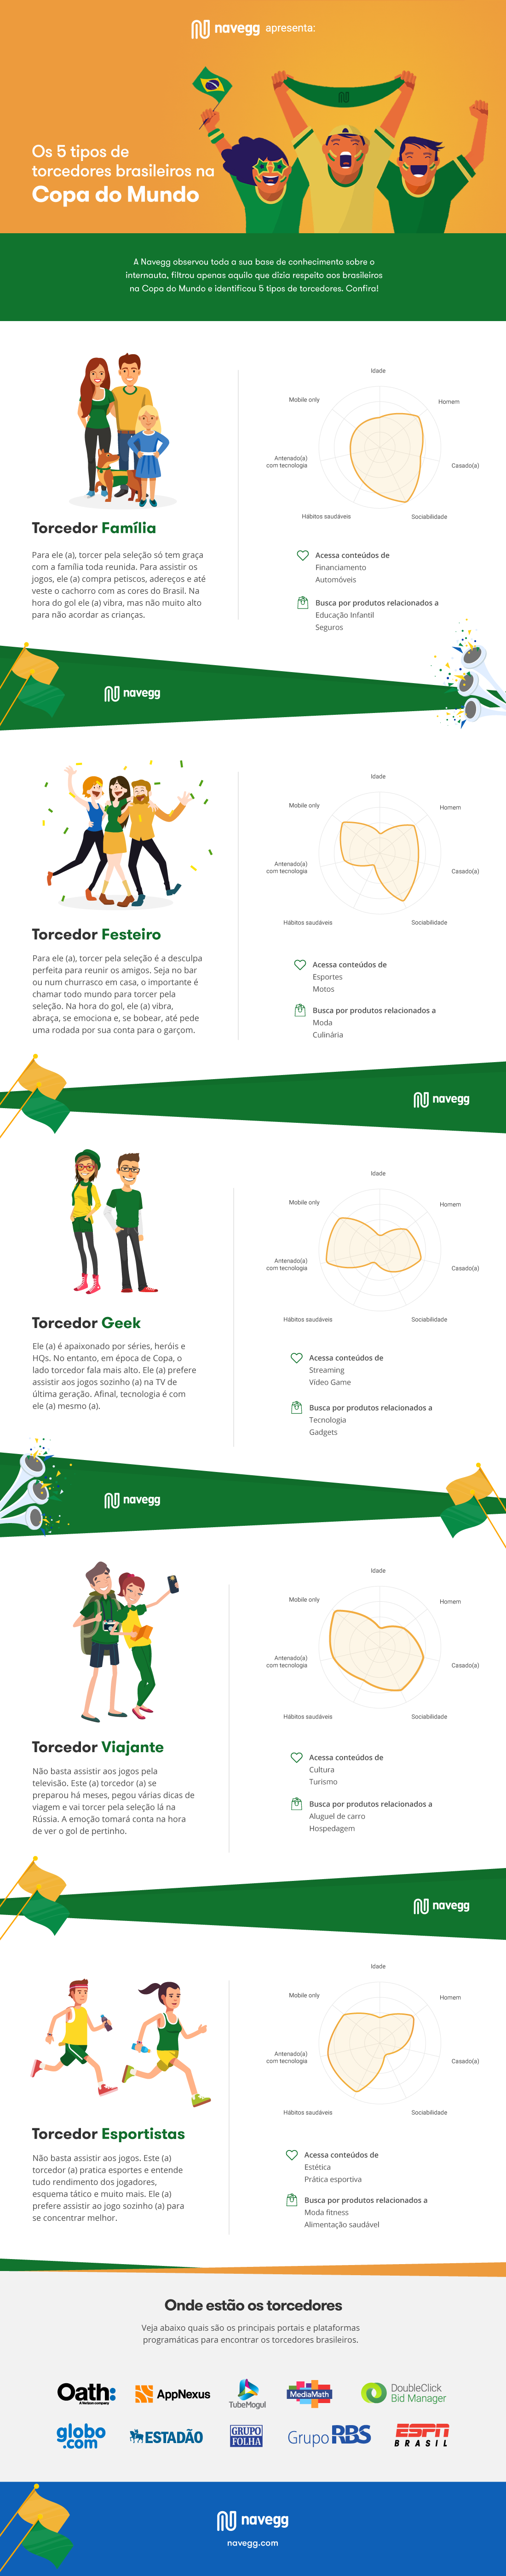 infografico-Os-5-tipos-de-torcedores-brasileiros-na-Copa-do-Mundo-desktop